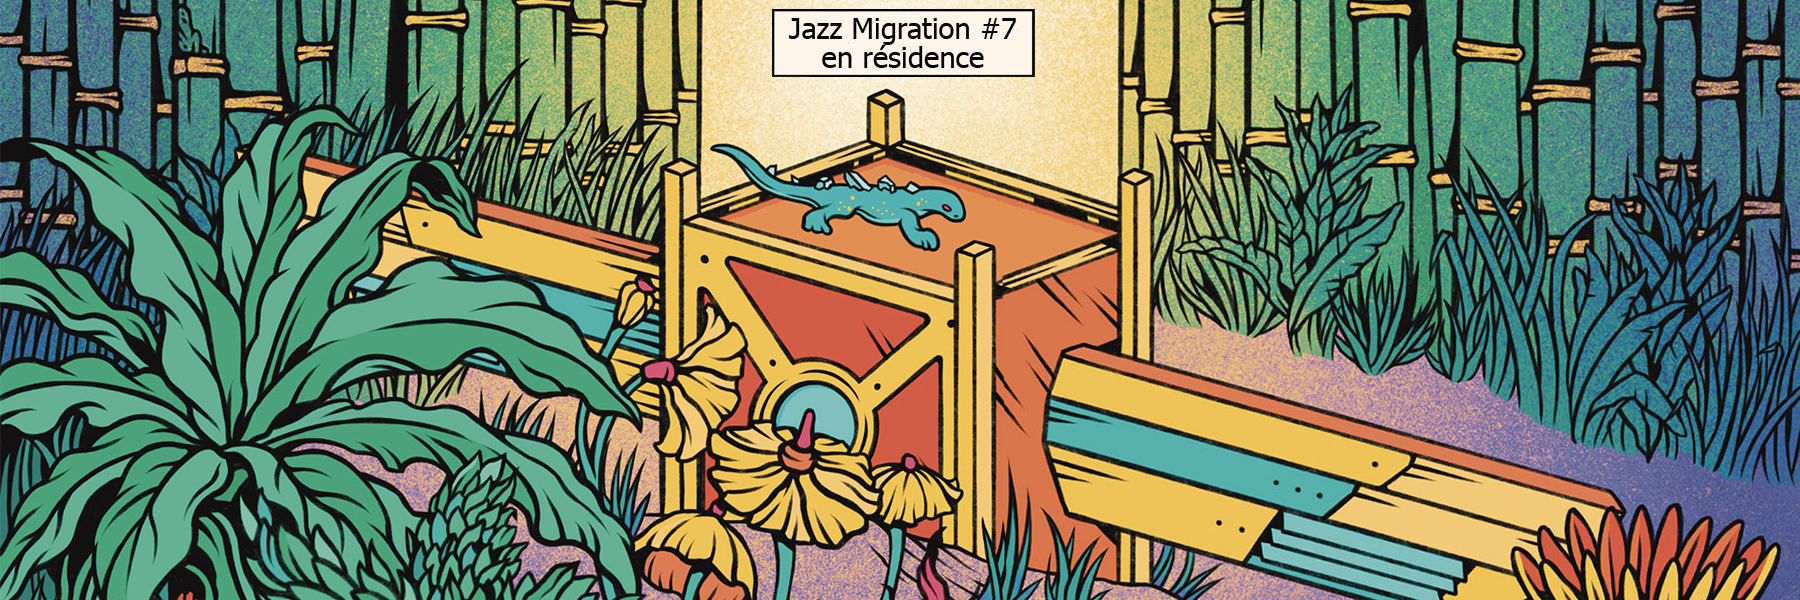 Lire la suite à propos de l’article Jazz Migration #7 en résidence !